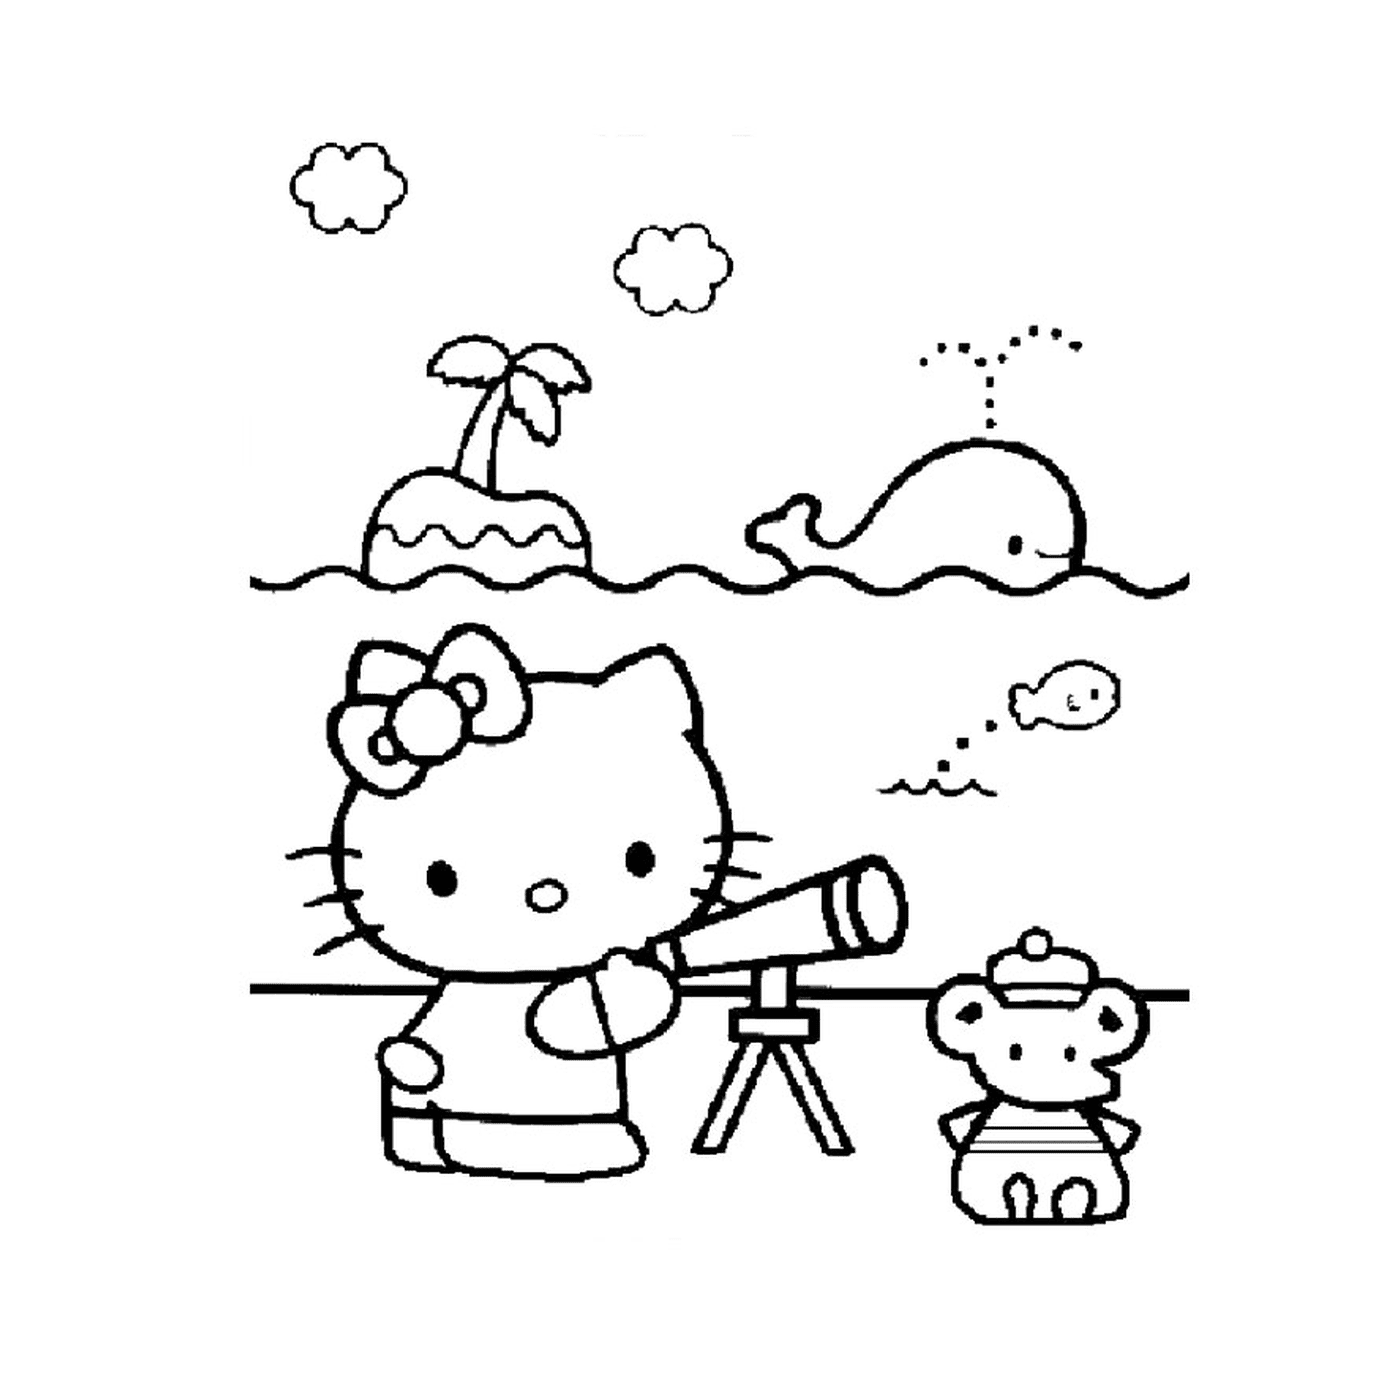   Palmier, Hello Kitty, télescope, ours en peluche 